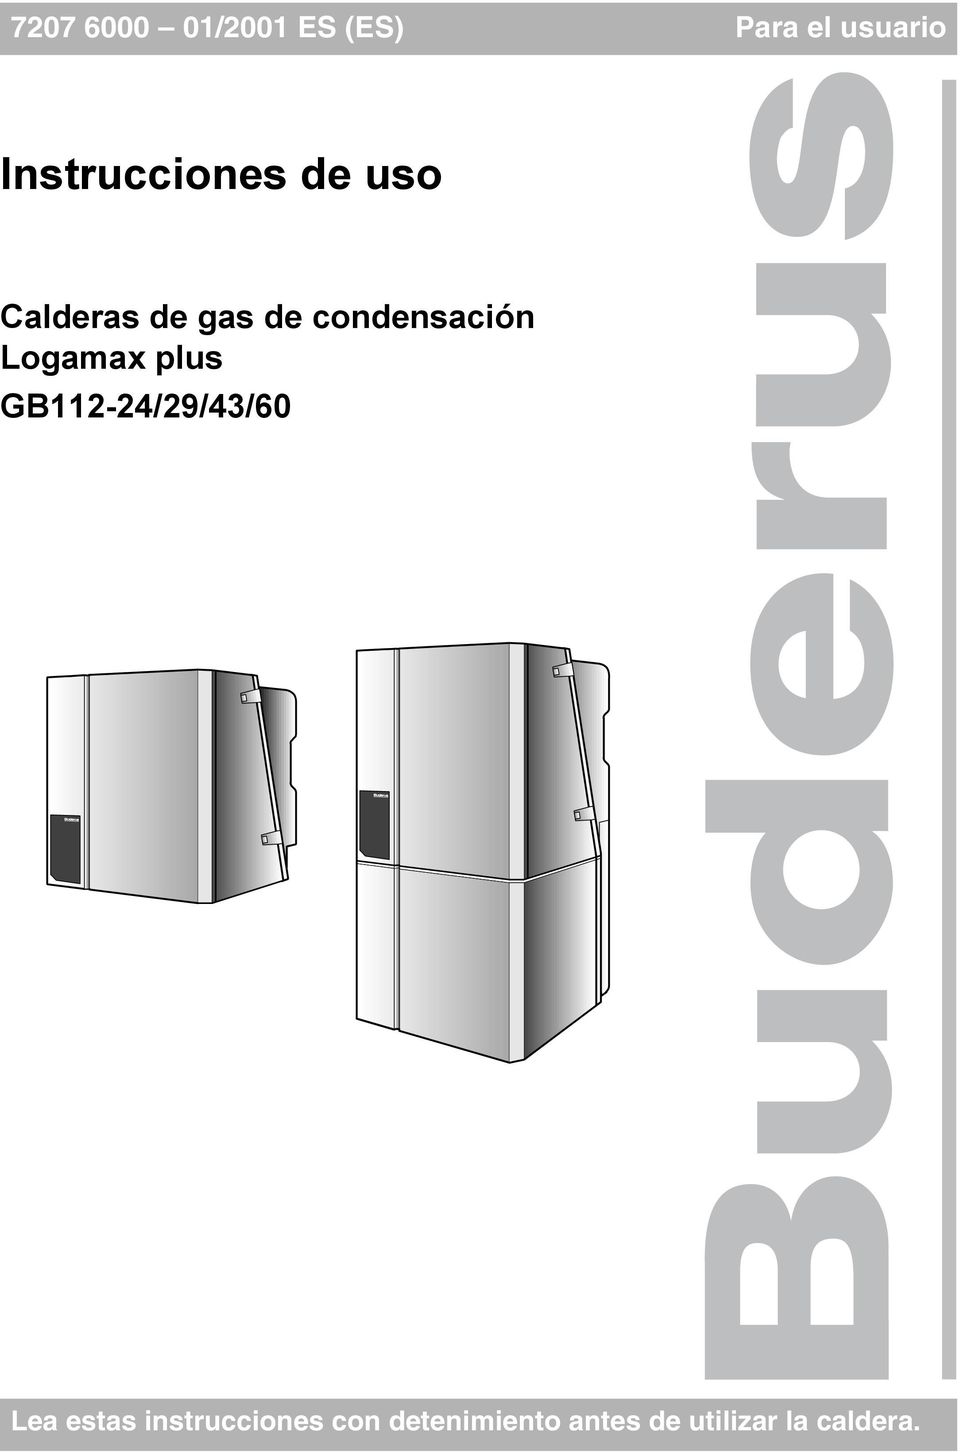 condensación Logamax plus GB112-24/29/43/60 Lea